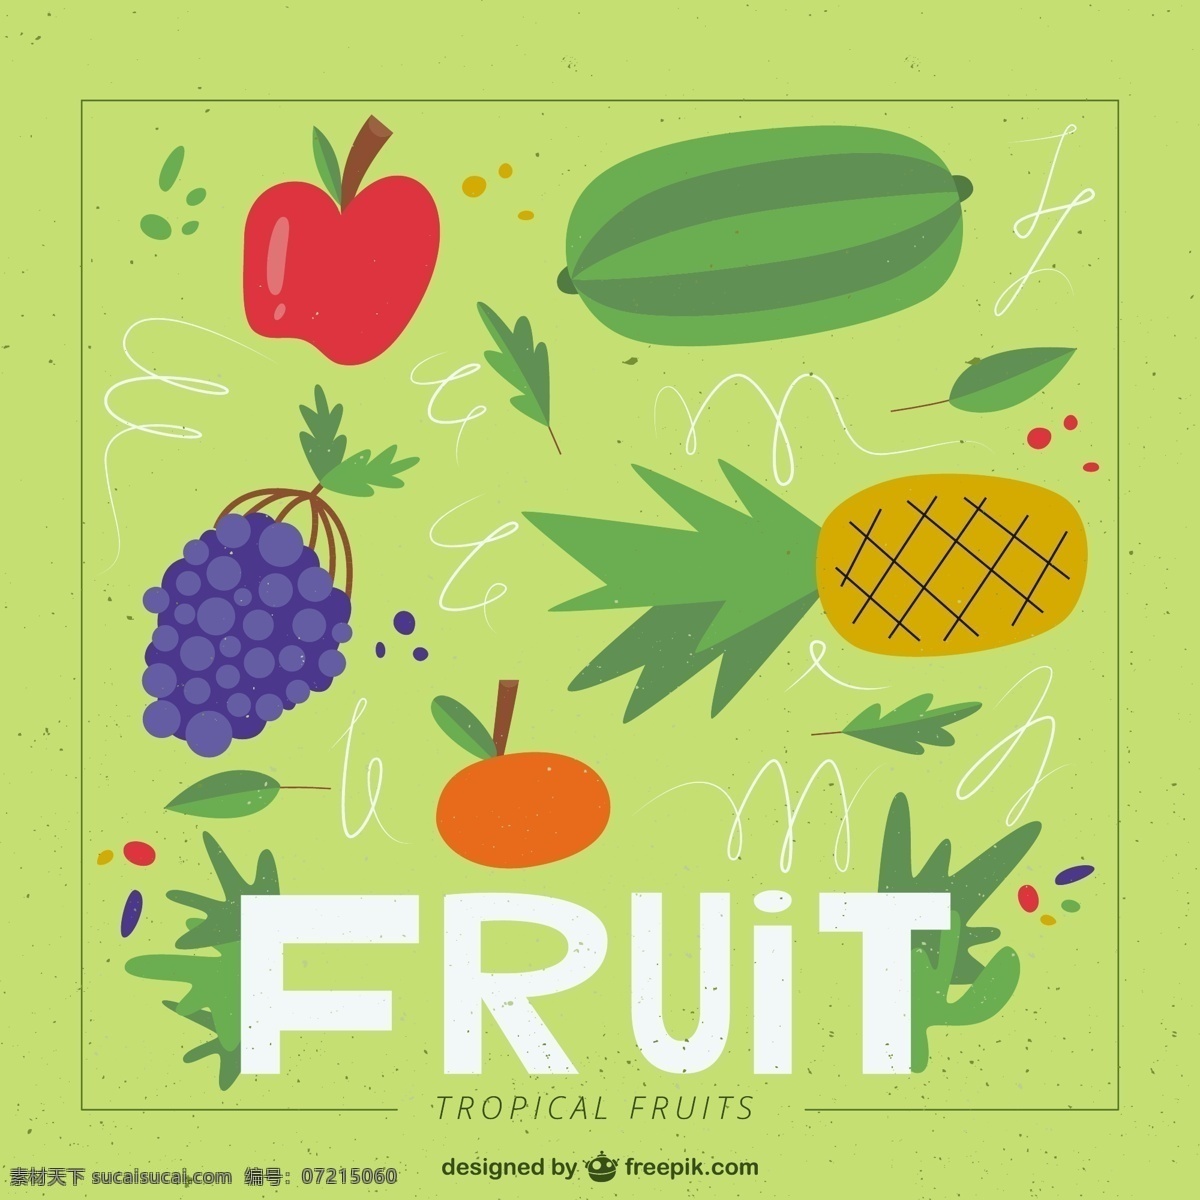 手绘 绿色 水果 背景 食物 自然 健康 绘制 色彩鲜艳 绘画 插图 食品 抽纱 彩色